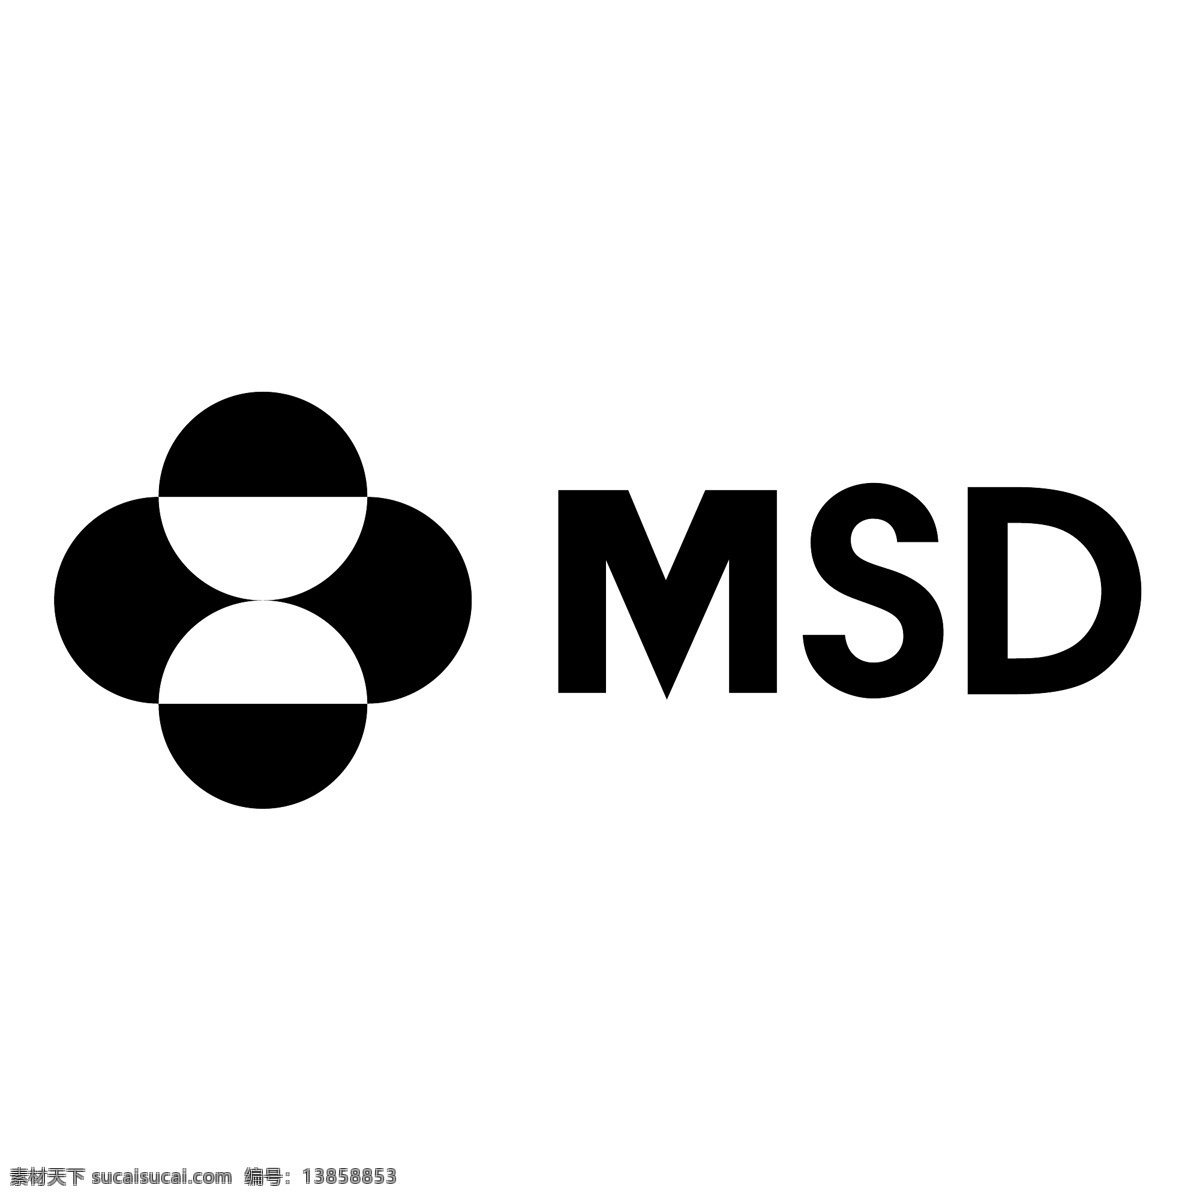 msd 默沙东 logo 免费 psd源文件 logo设计